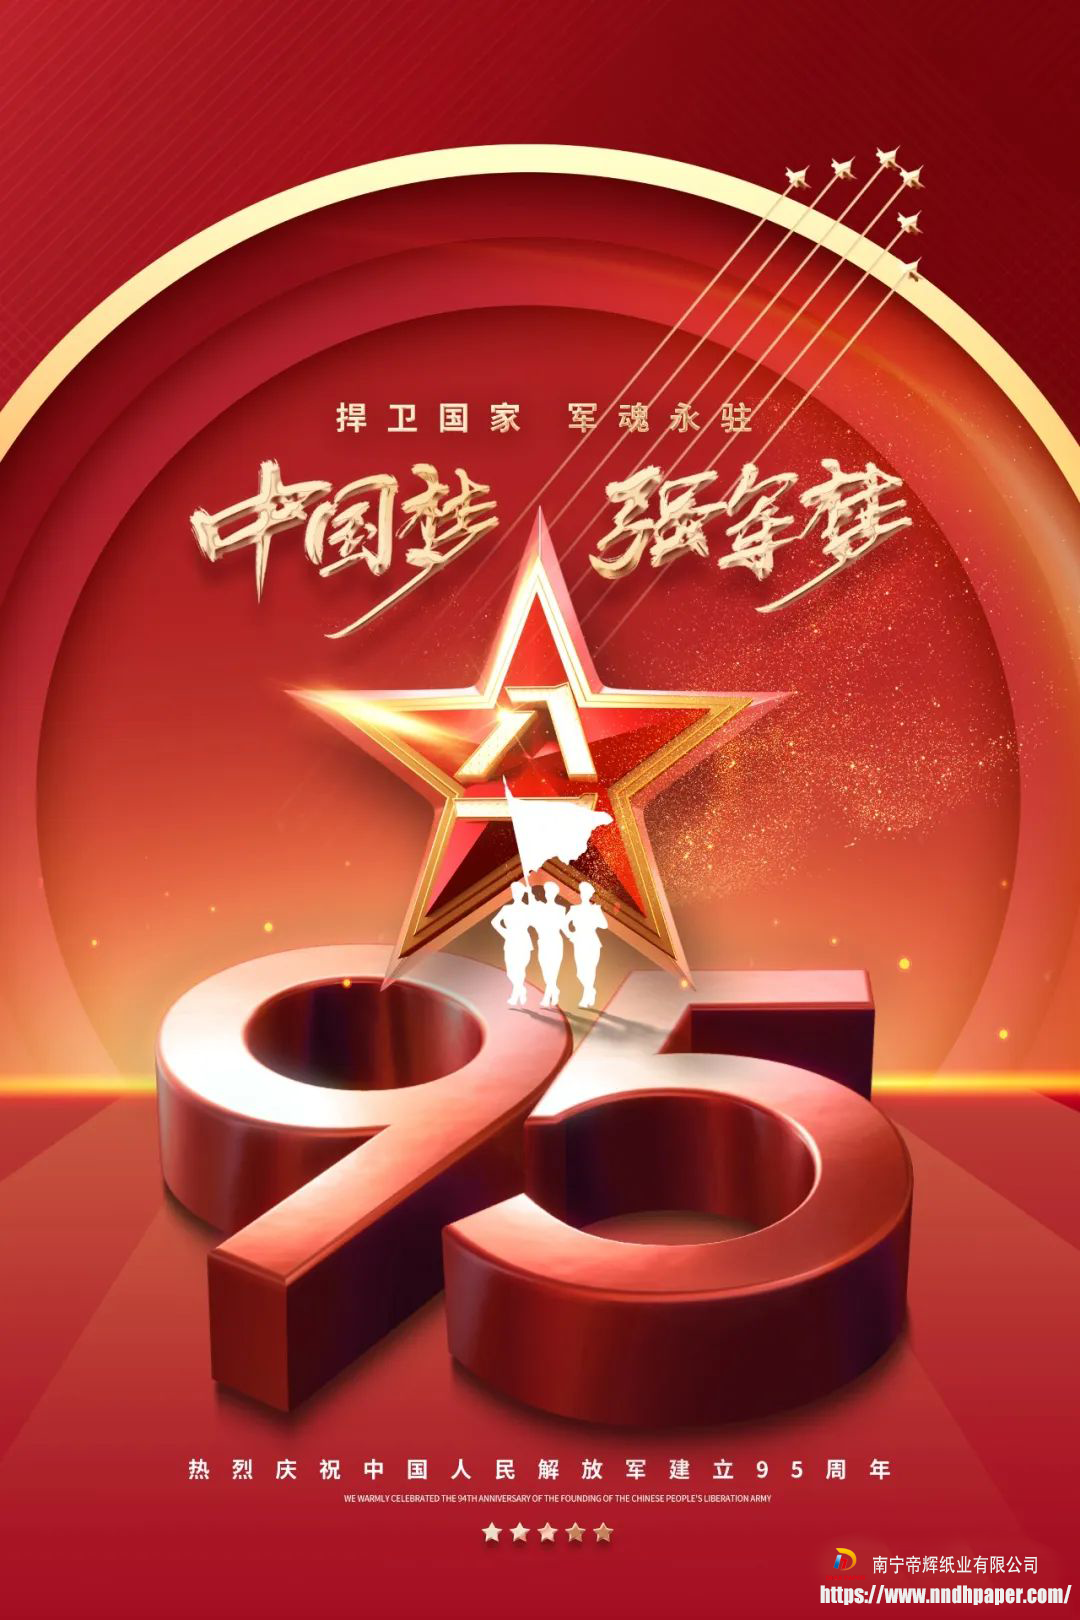 Hari Tentara 1 Agustus, berikan penghormatan kepada tentara Tiongkok!Penghargaan untuk orang yang paling lucu!